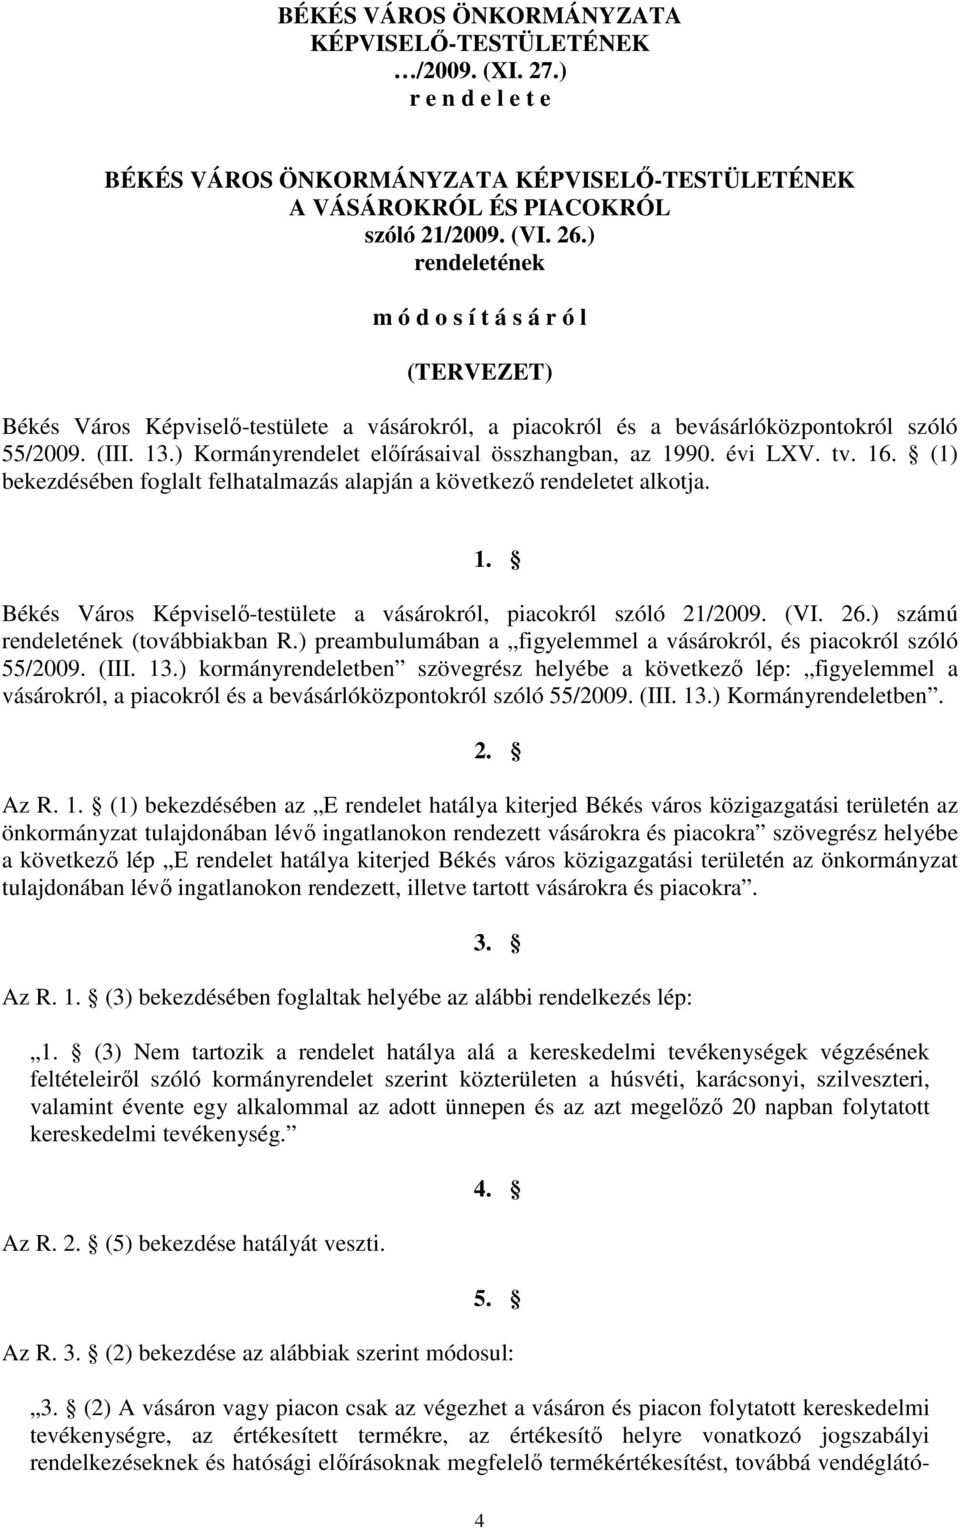 ) Kormányrendelet elıírásaival összhangban, az 1990. évi LXV. tv. 16. (1) bekezdésében foglalt felhatalmazás alapján a következı rendeletet alkotja. 1. Békés Város Képviselı-testülete a vásárokról, piacokról szóló 21/2009.